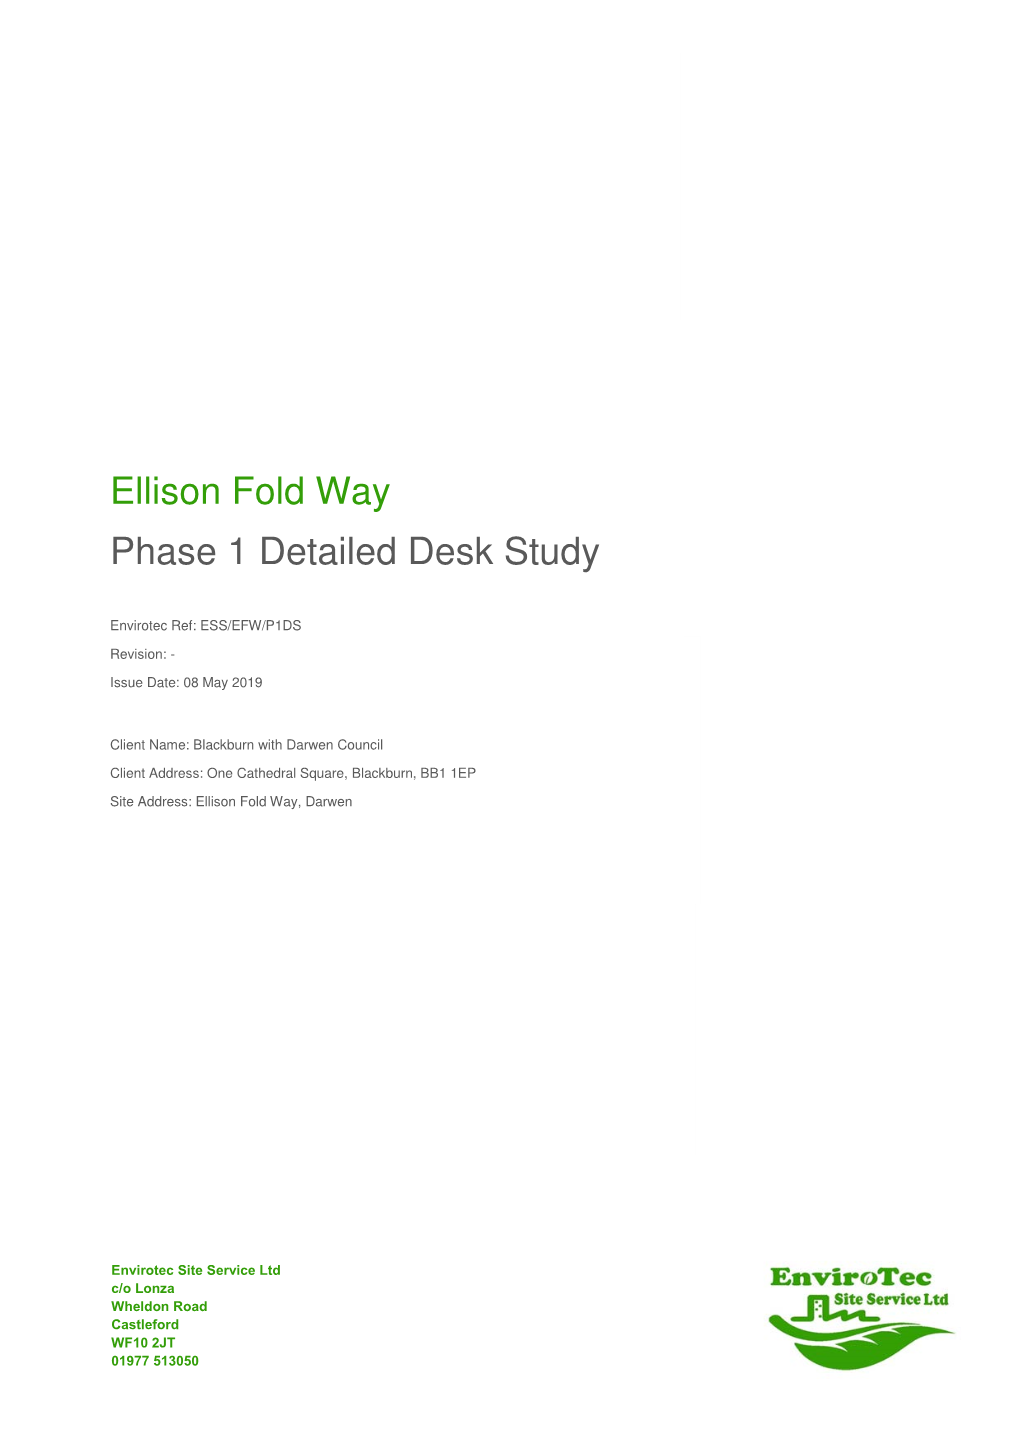 Ellison Fold Way Phase 1 Detailed Desk Study